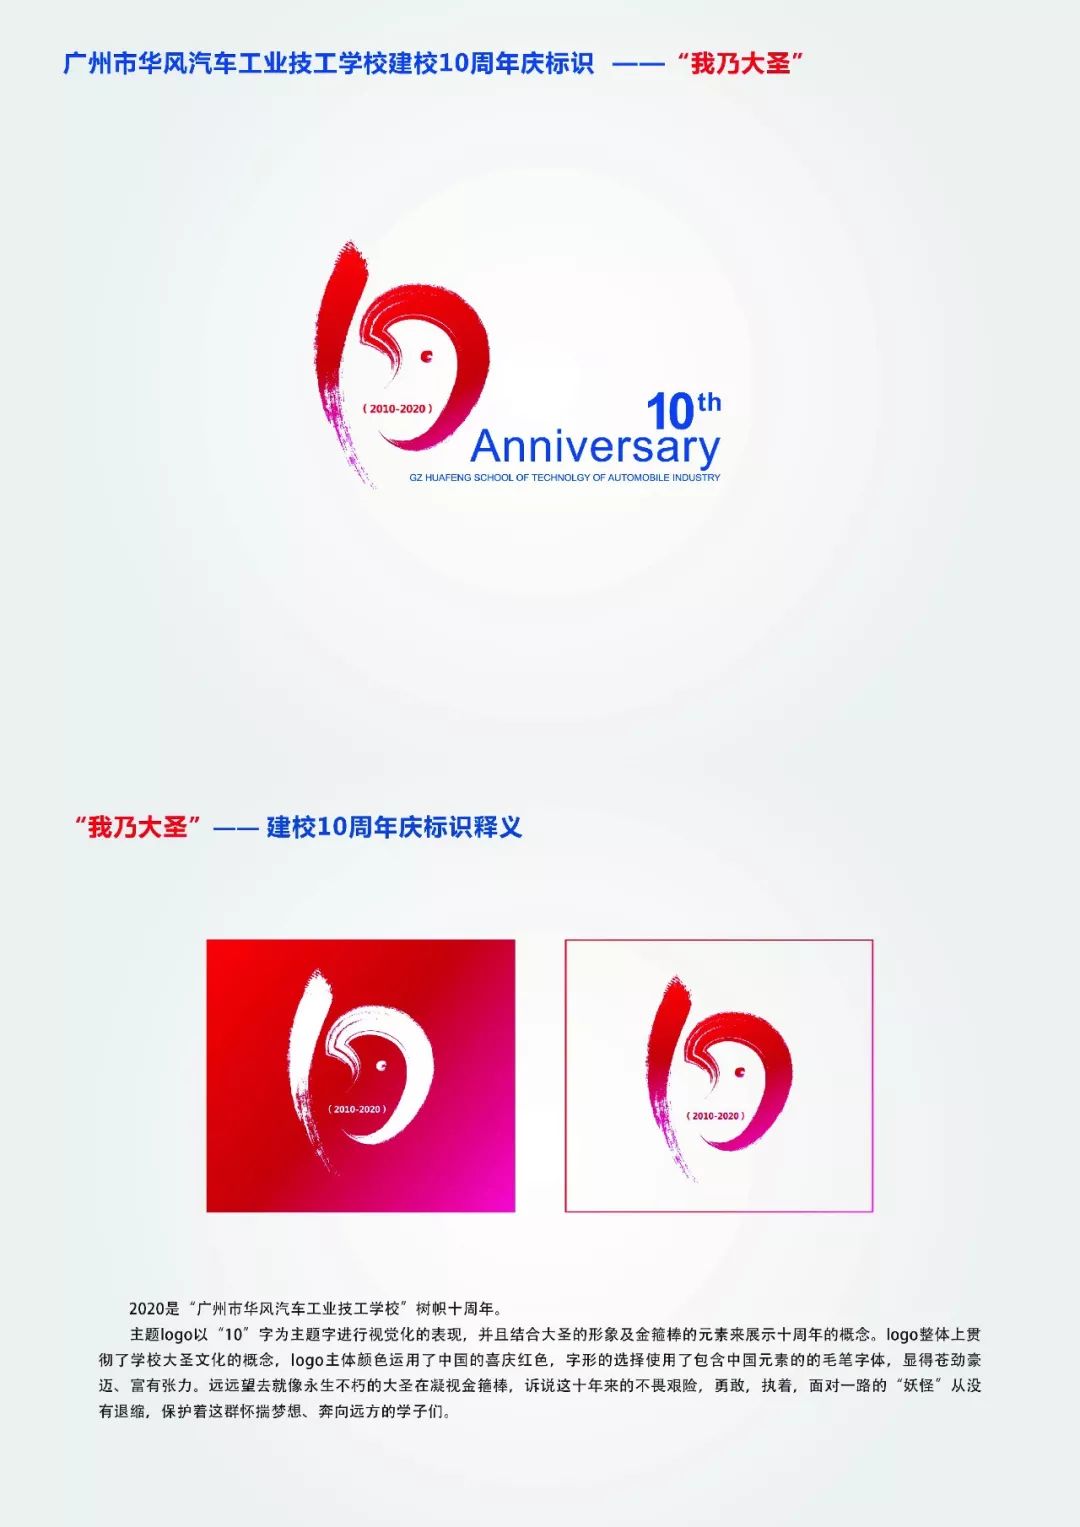 华风技校10周年校庆logo征集网络投票开始啦